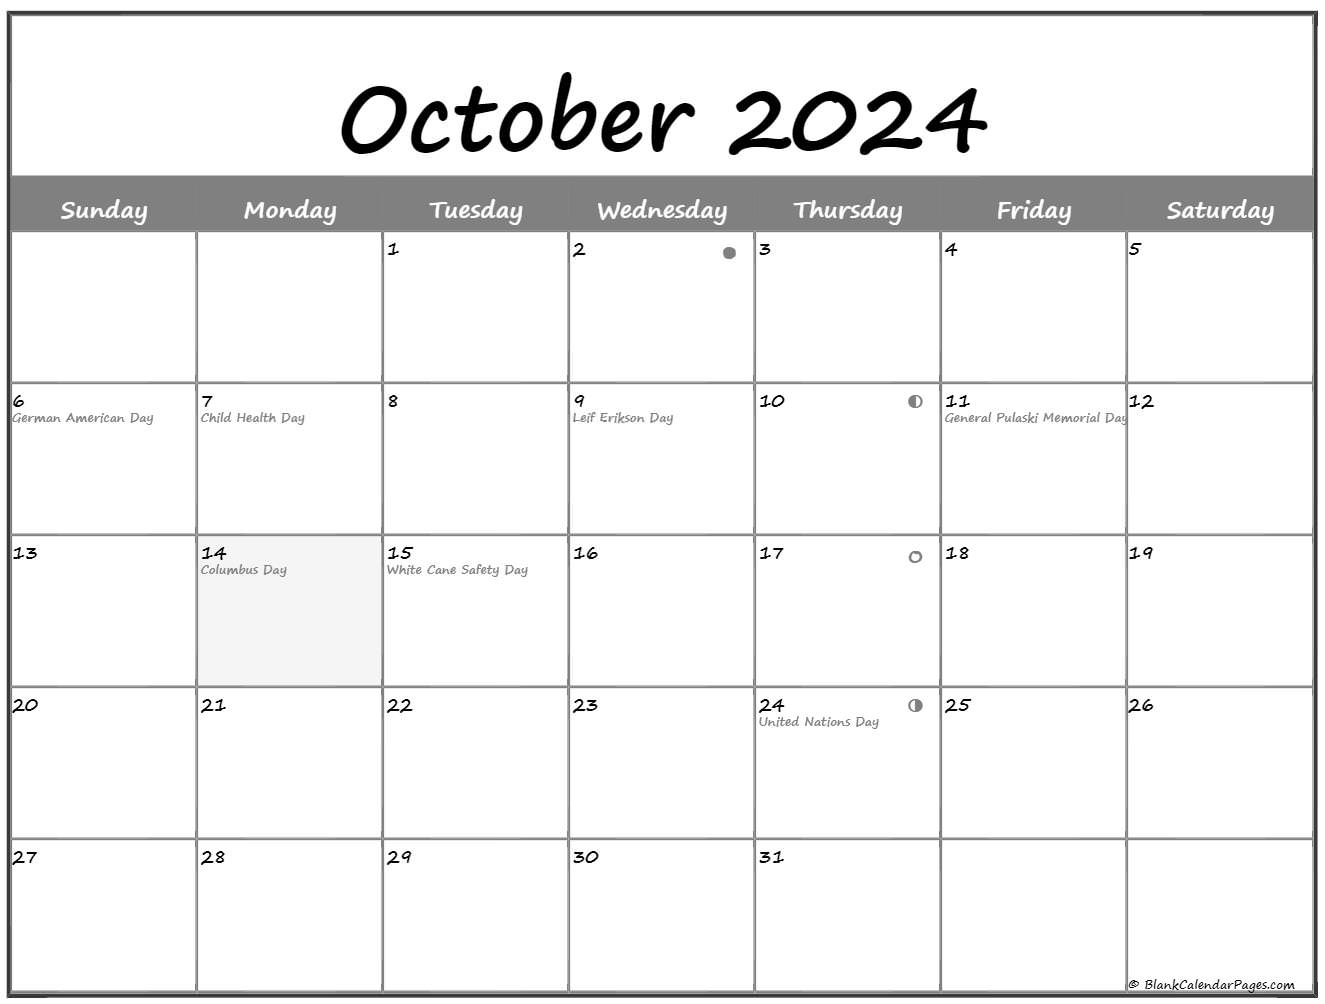 Lunar Calendar October 2022 October 2022 Lunar Calendar | Moon Phase Calendar